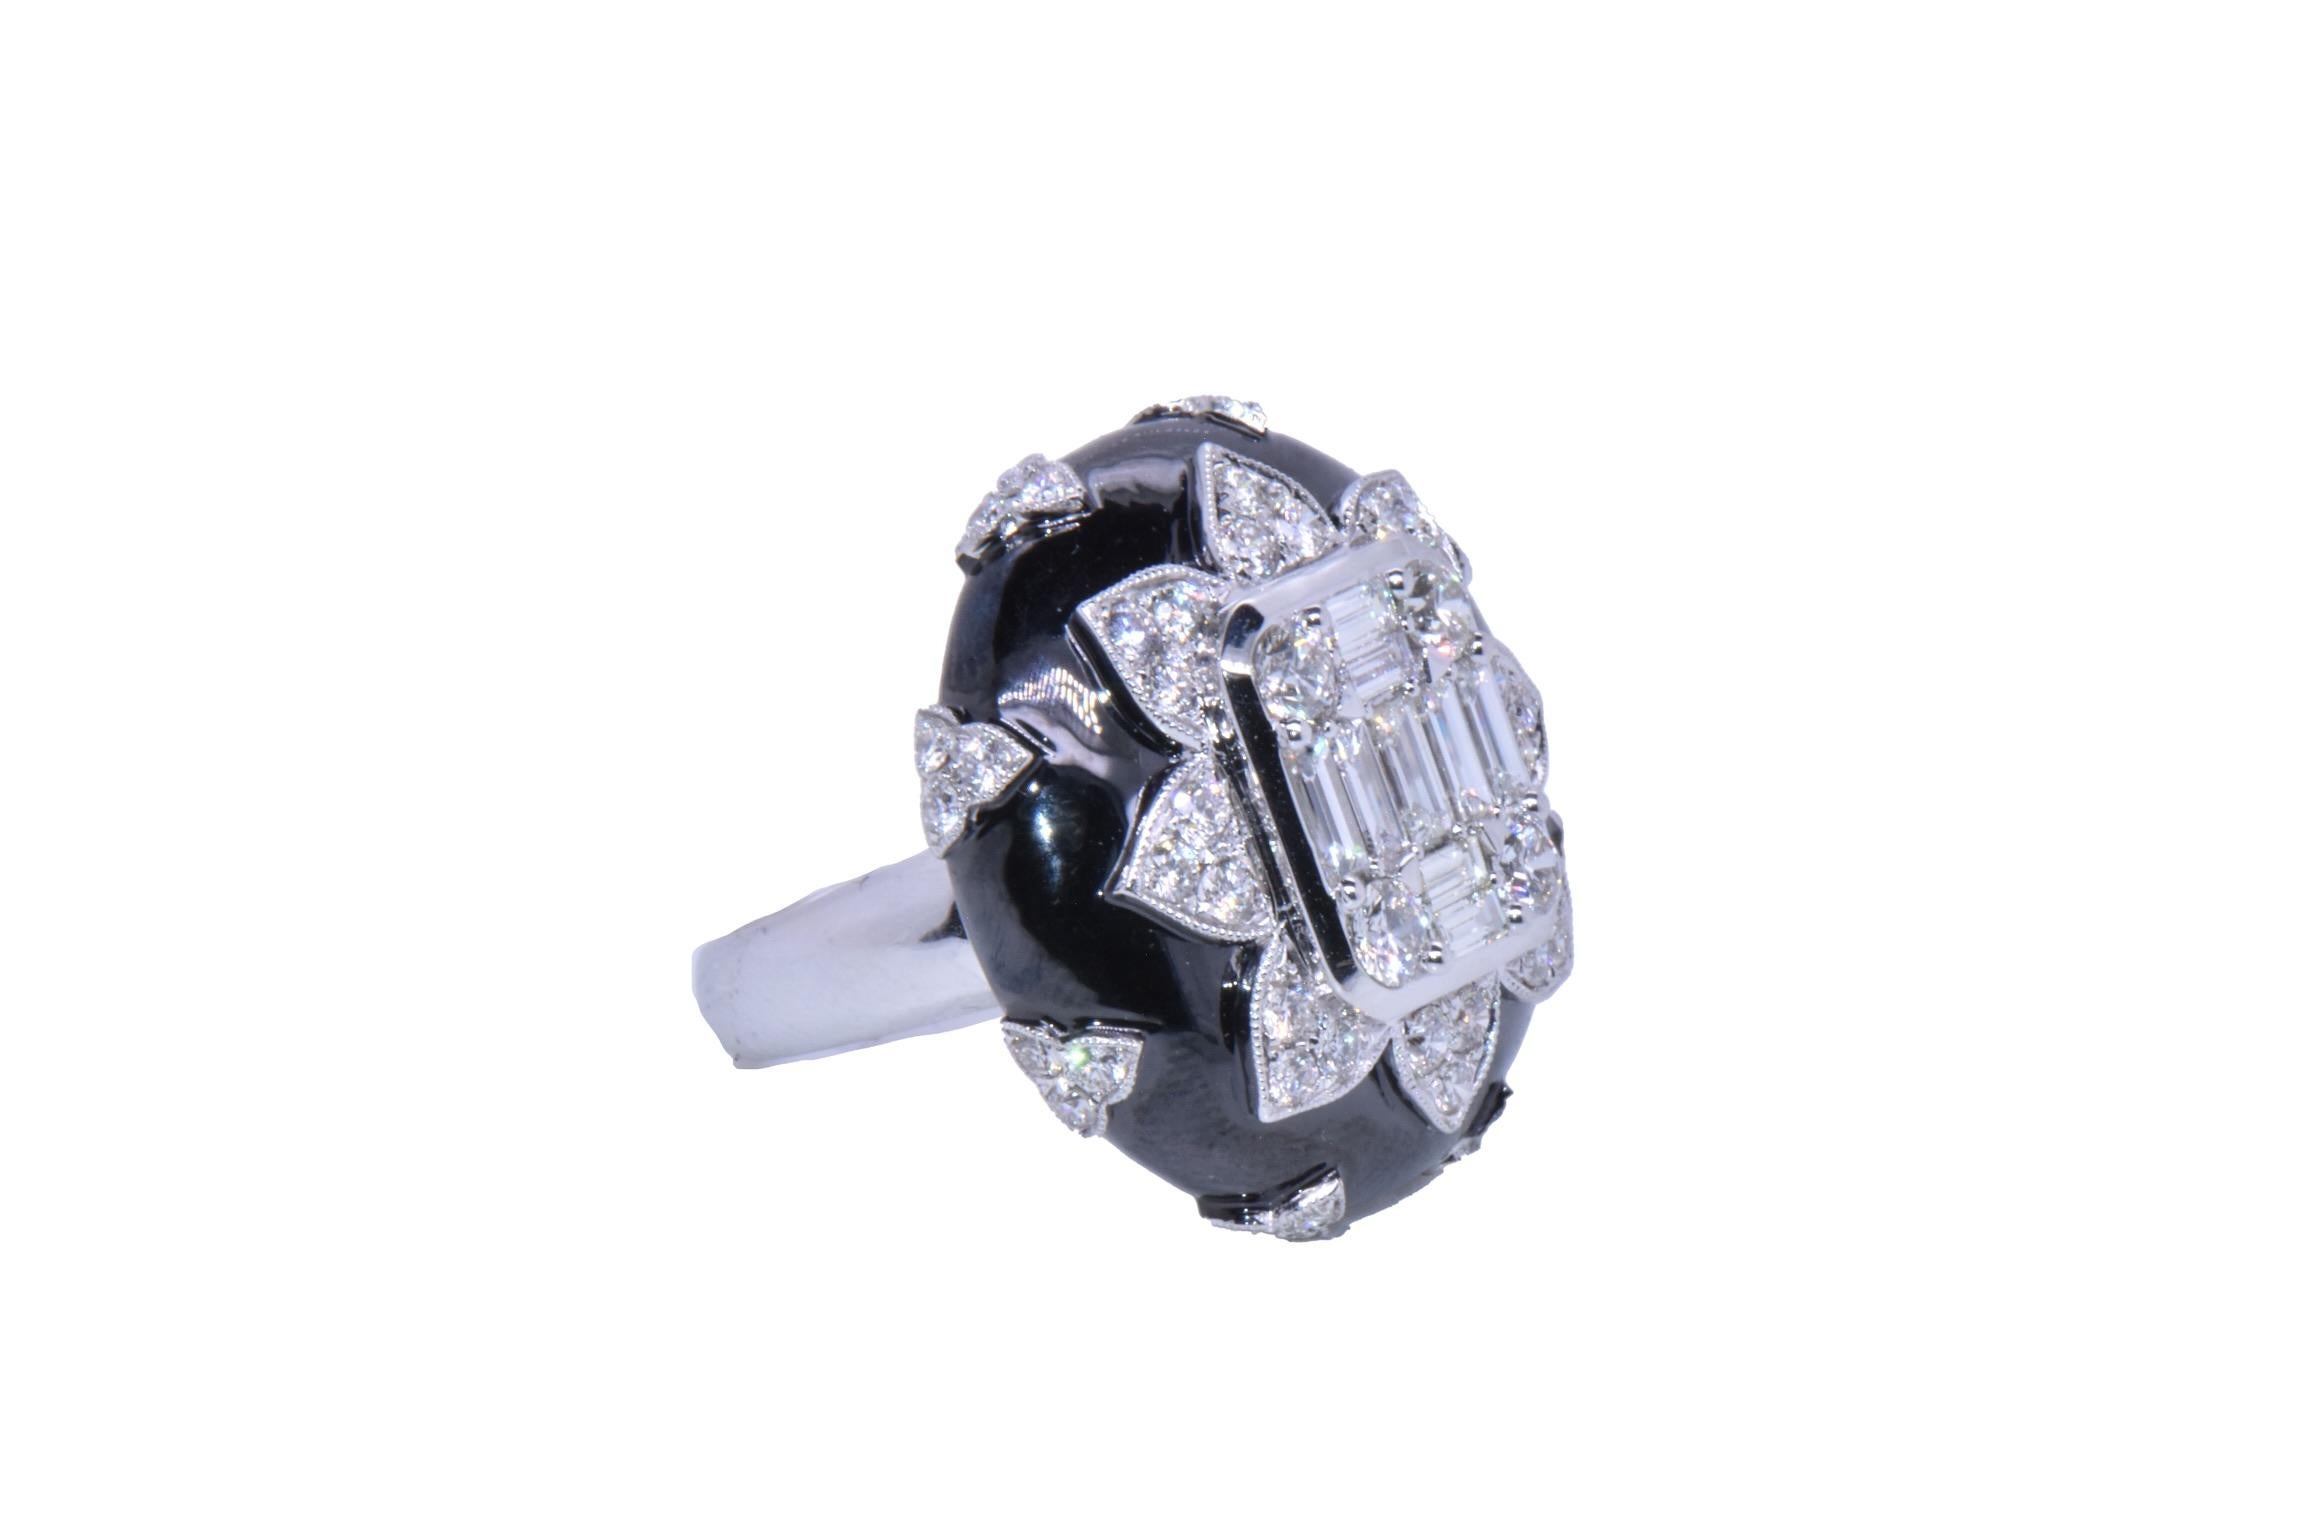 Aesthetic Movement 2.80 Carat Diamond Baguette Flower Ring in 18k White Gold and Black Enamel  For Sale